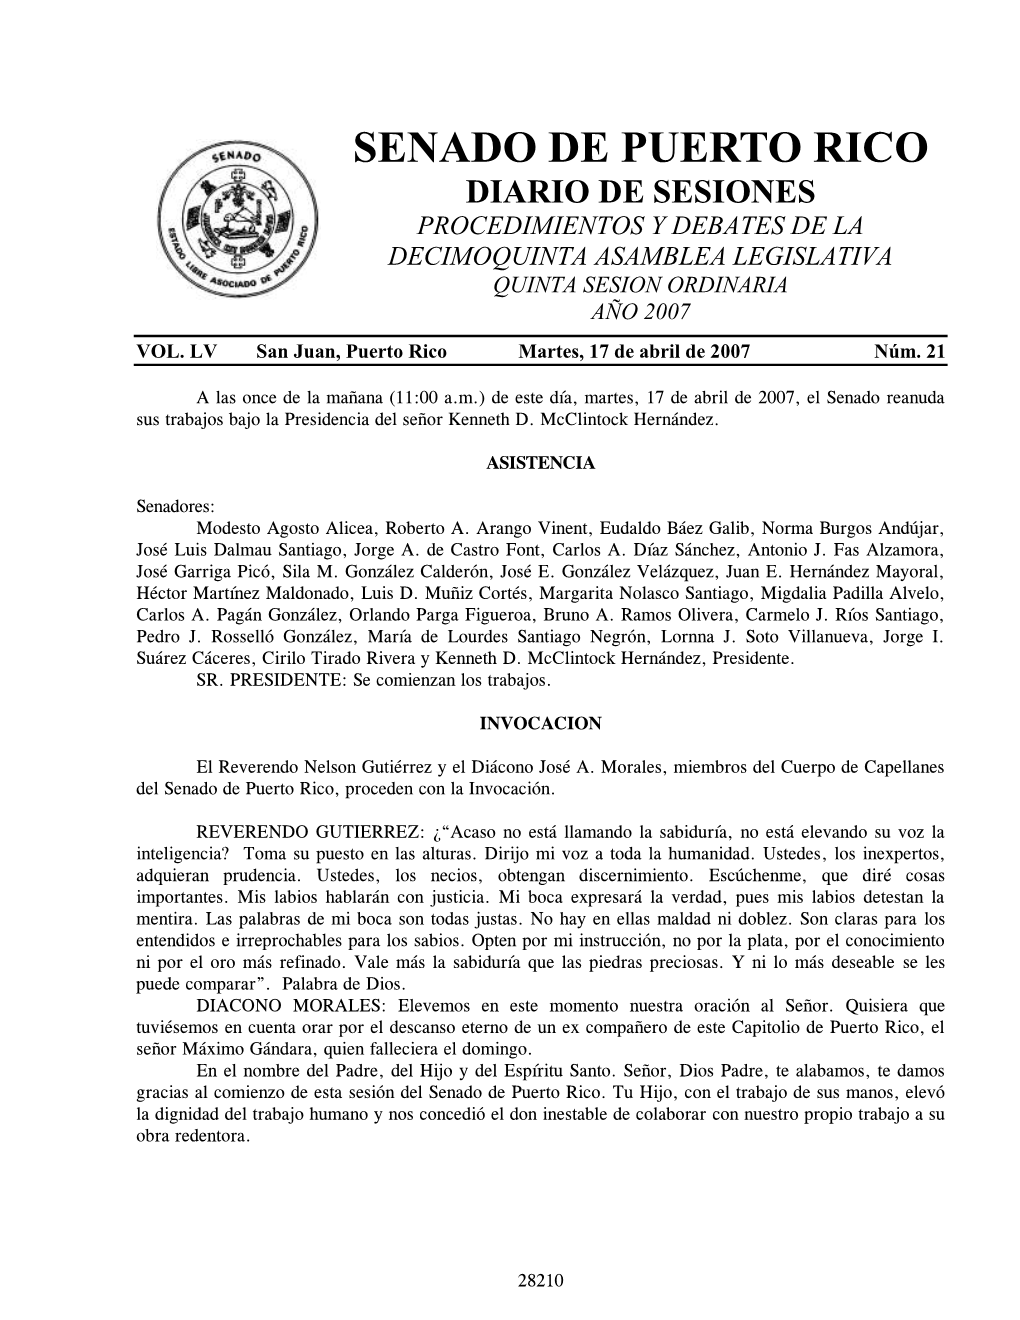 Diario De Sesiones Procedimientos Y Debates De La Decimoquinta Asamblea Legislativa Quinta Sesion Ordinaria Año 2007 Vol